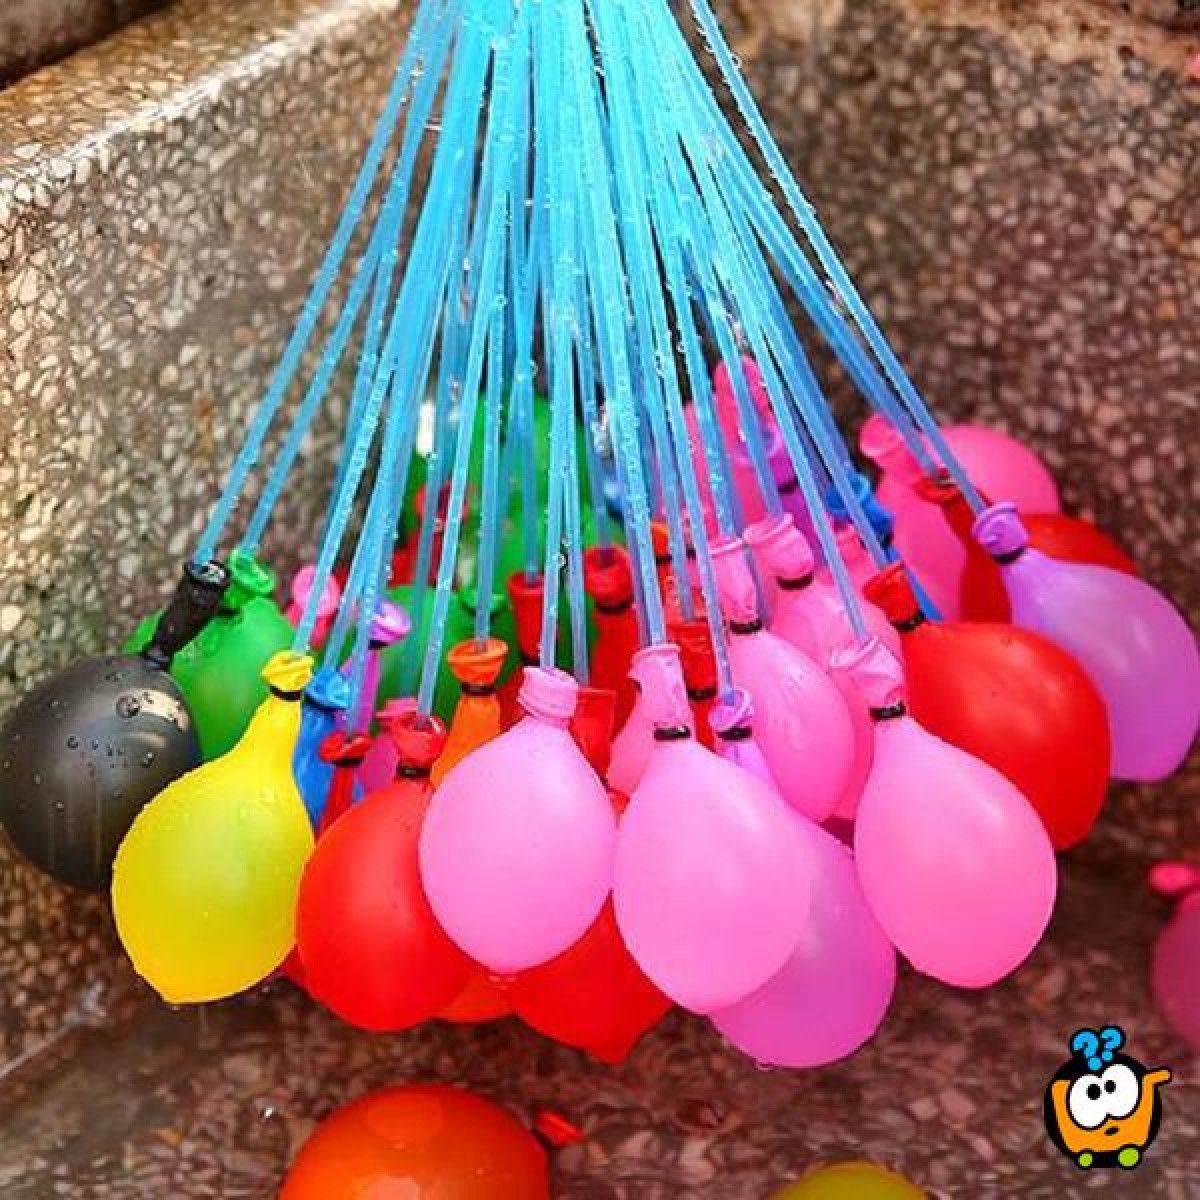 Как залить воду в шарики воздушные. Водяные шарики бомбочки. Маленькие воздушные шарики. Водяные бомбочки из шариков. Декор с воздушными шариками для воды.